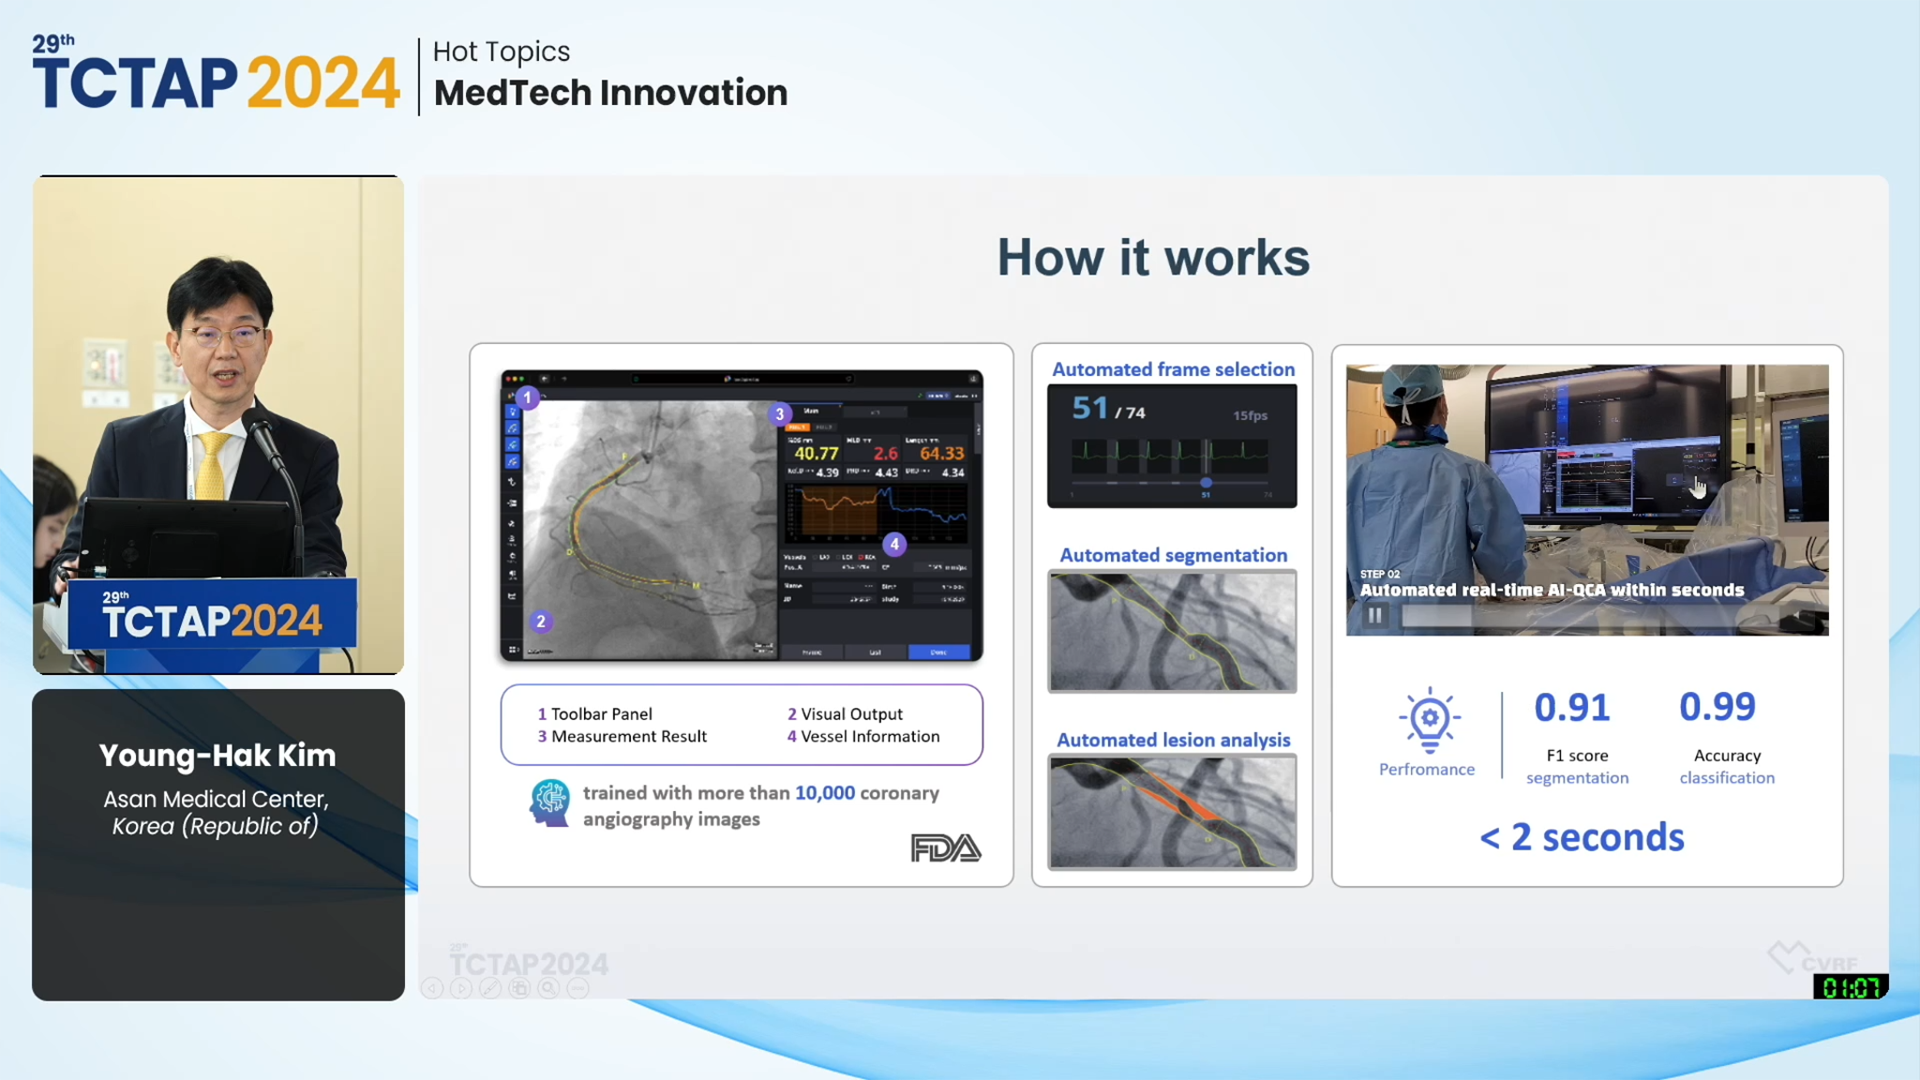 [Hot Topics] MedTech Innovation